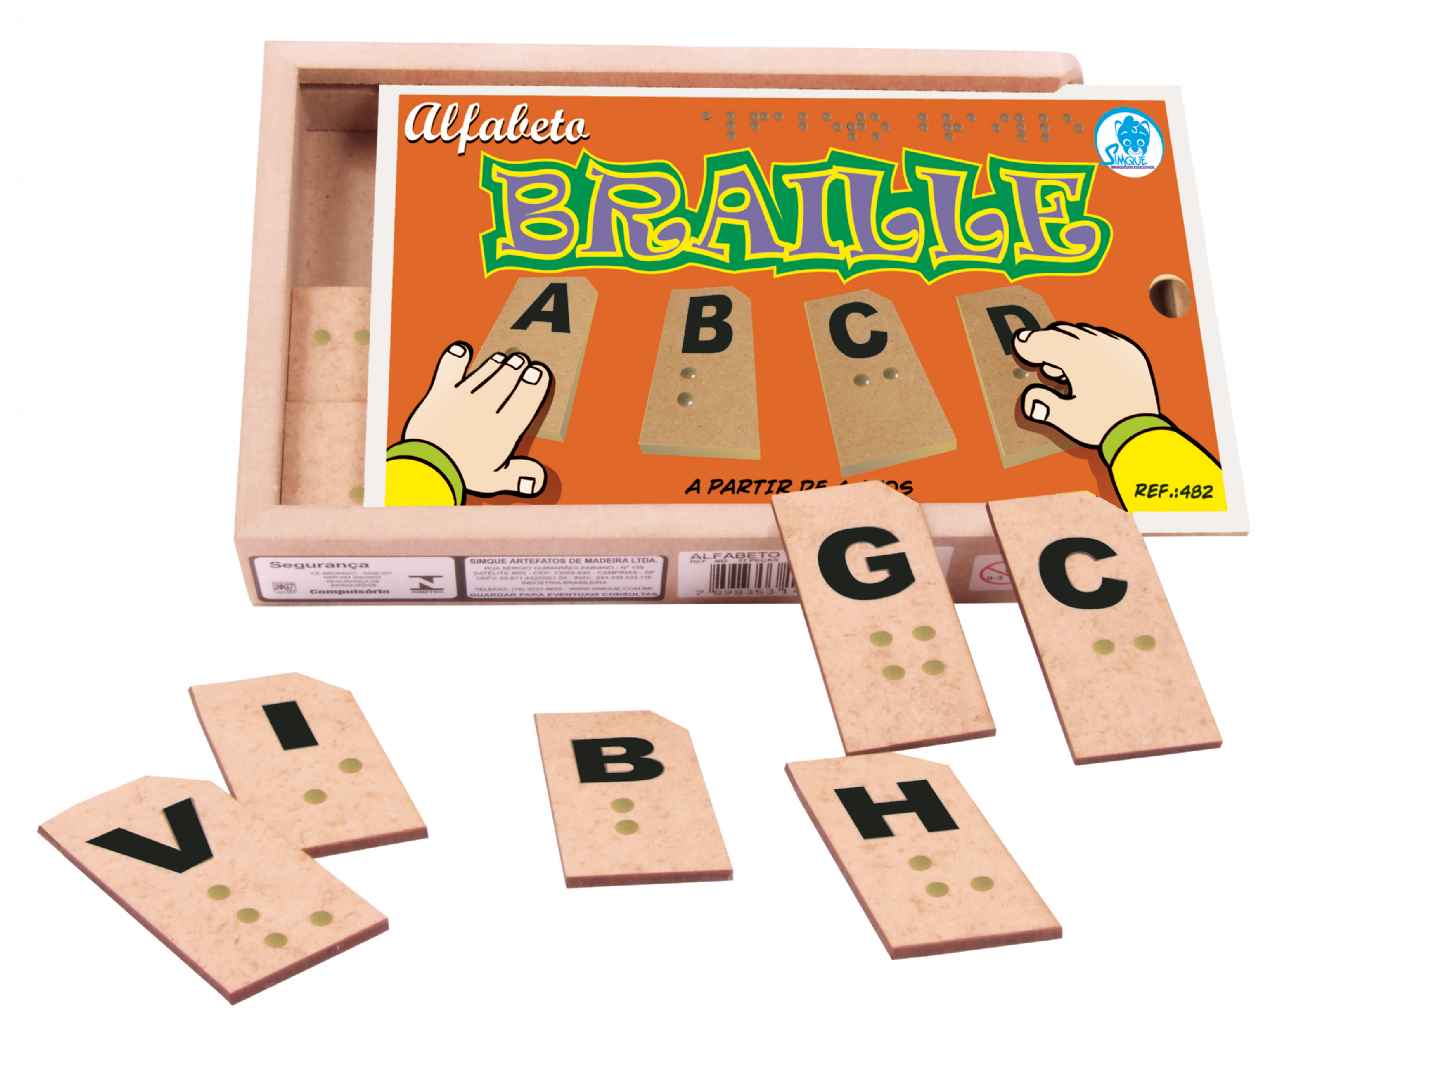 Aluna de magistério produz alfabeto em Braille com materiais